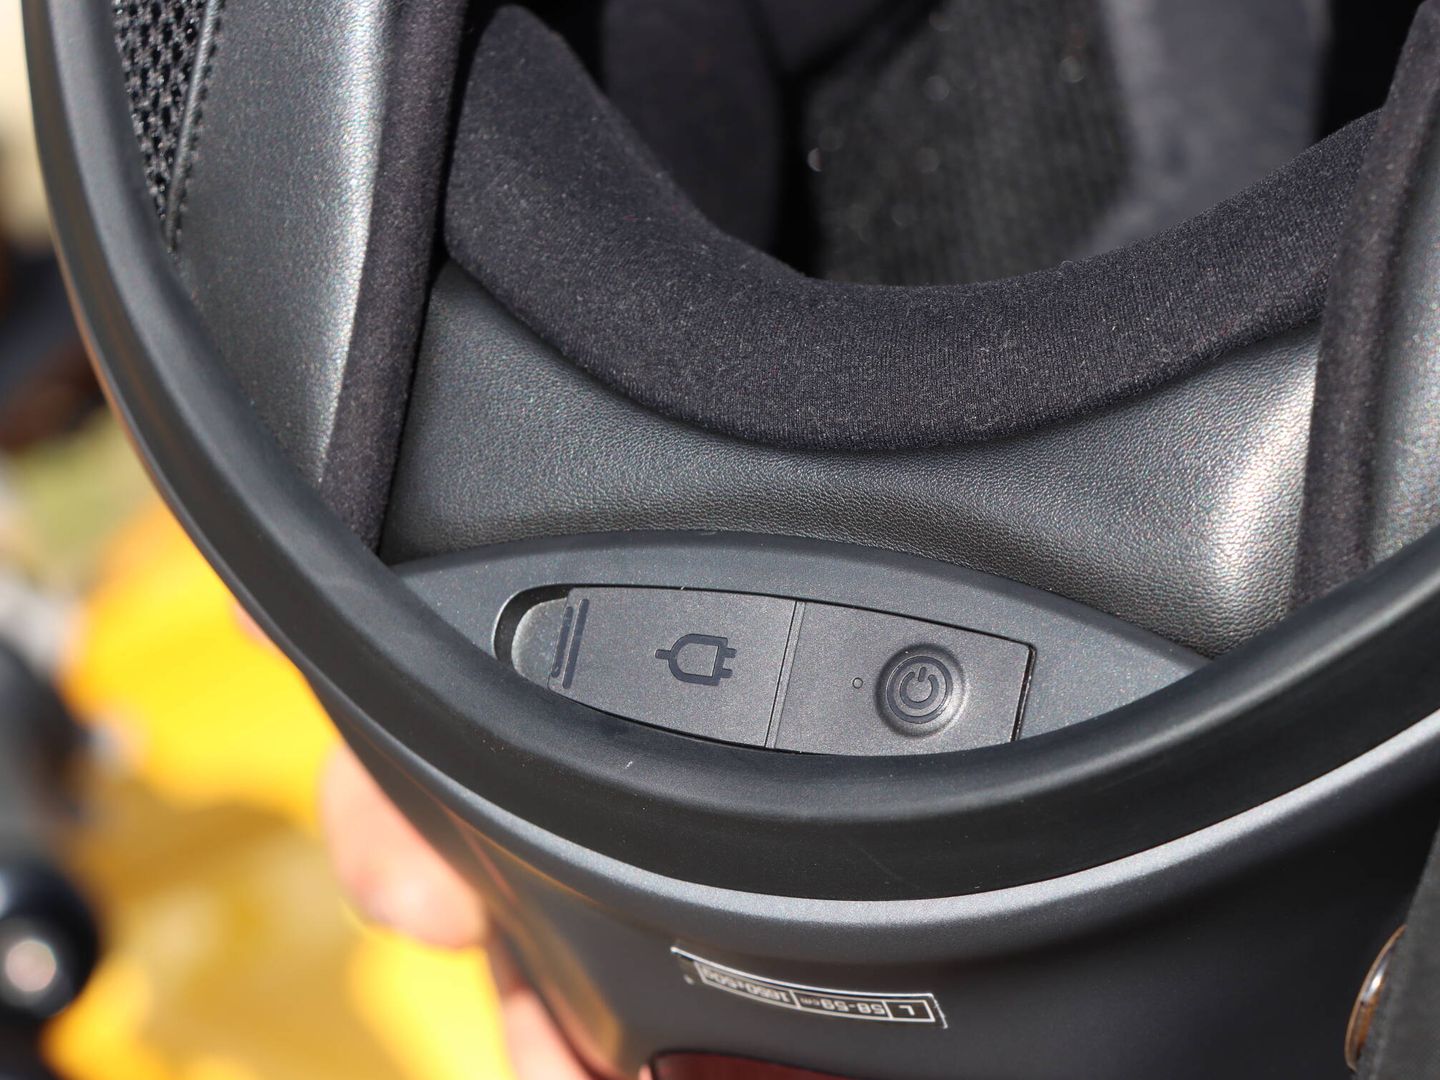 El conector para la recarga y el botón de encendido van en zona posterior de la base del casco.